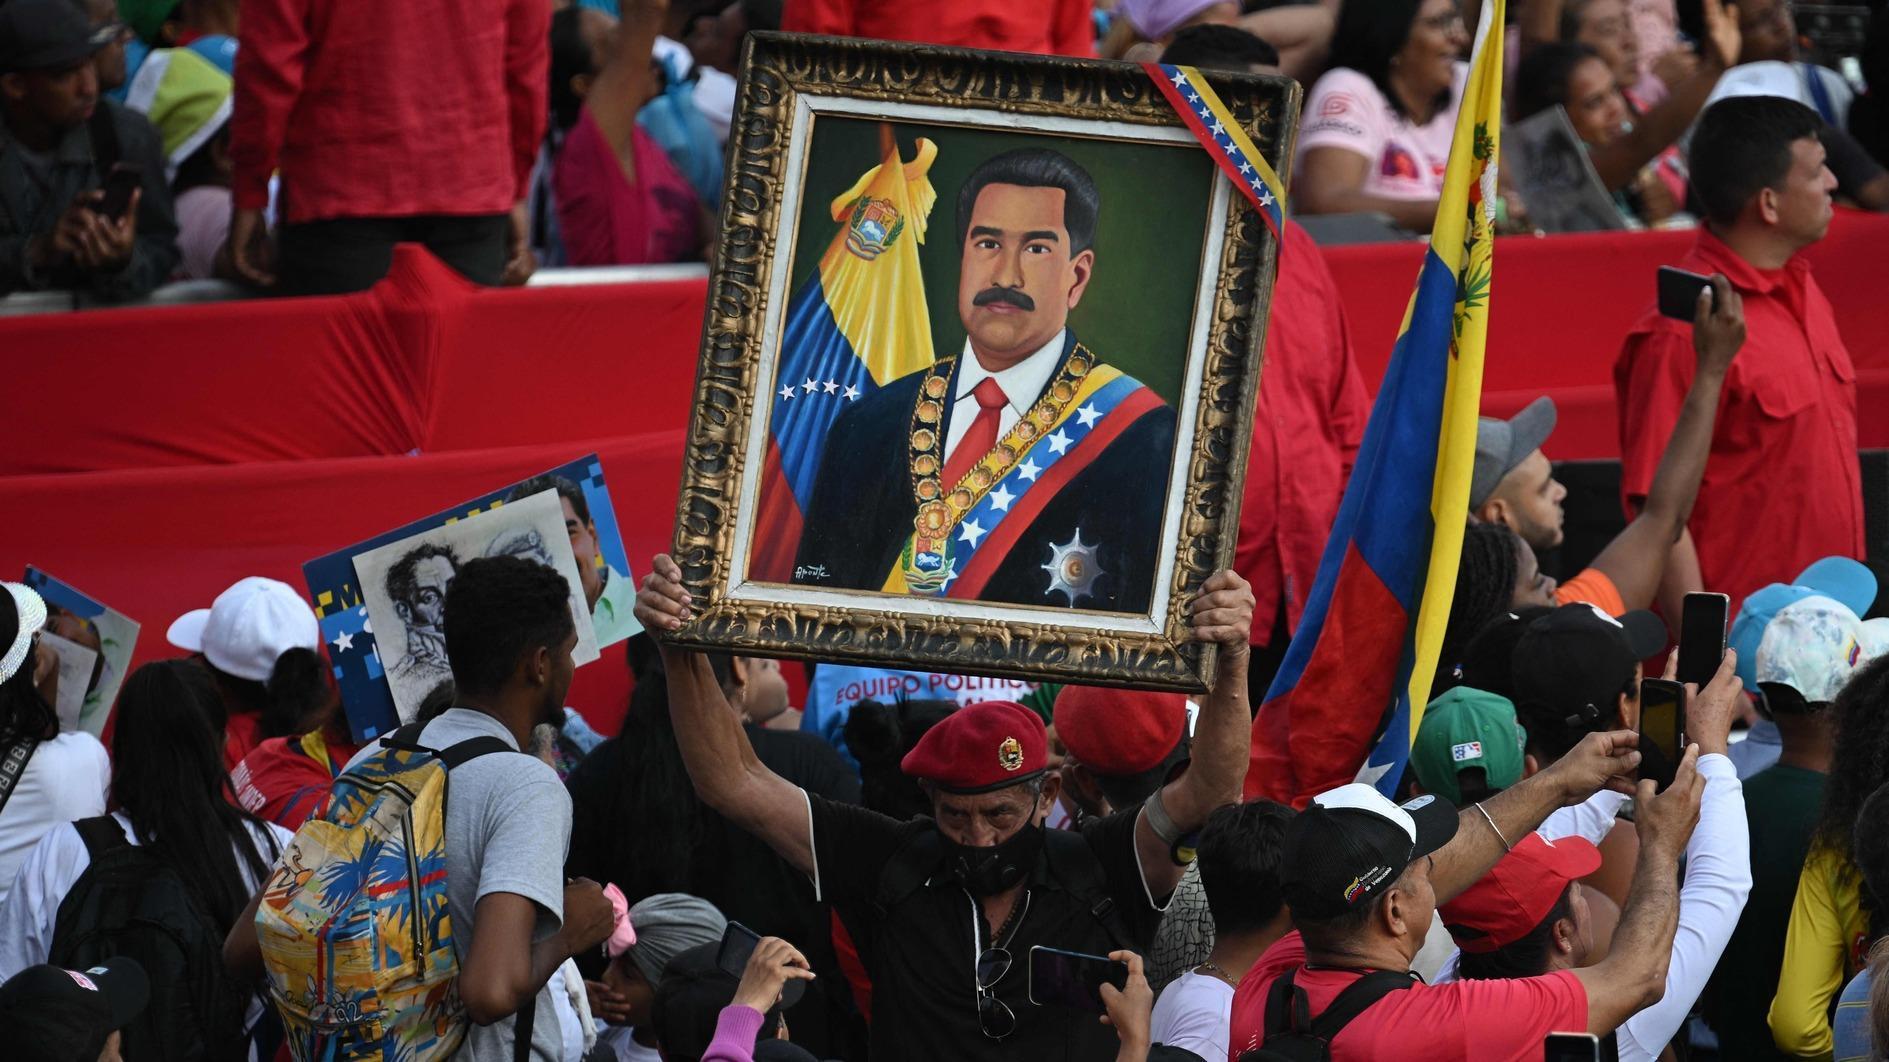 Maduro da Venezuela apresenta candidatura eleitoral, coalizão de oposição bloqueada